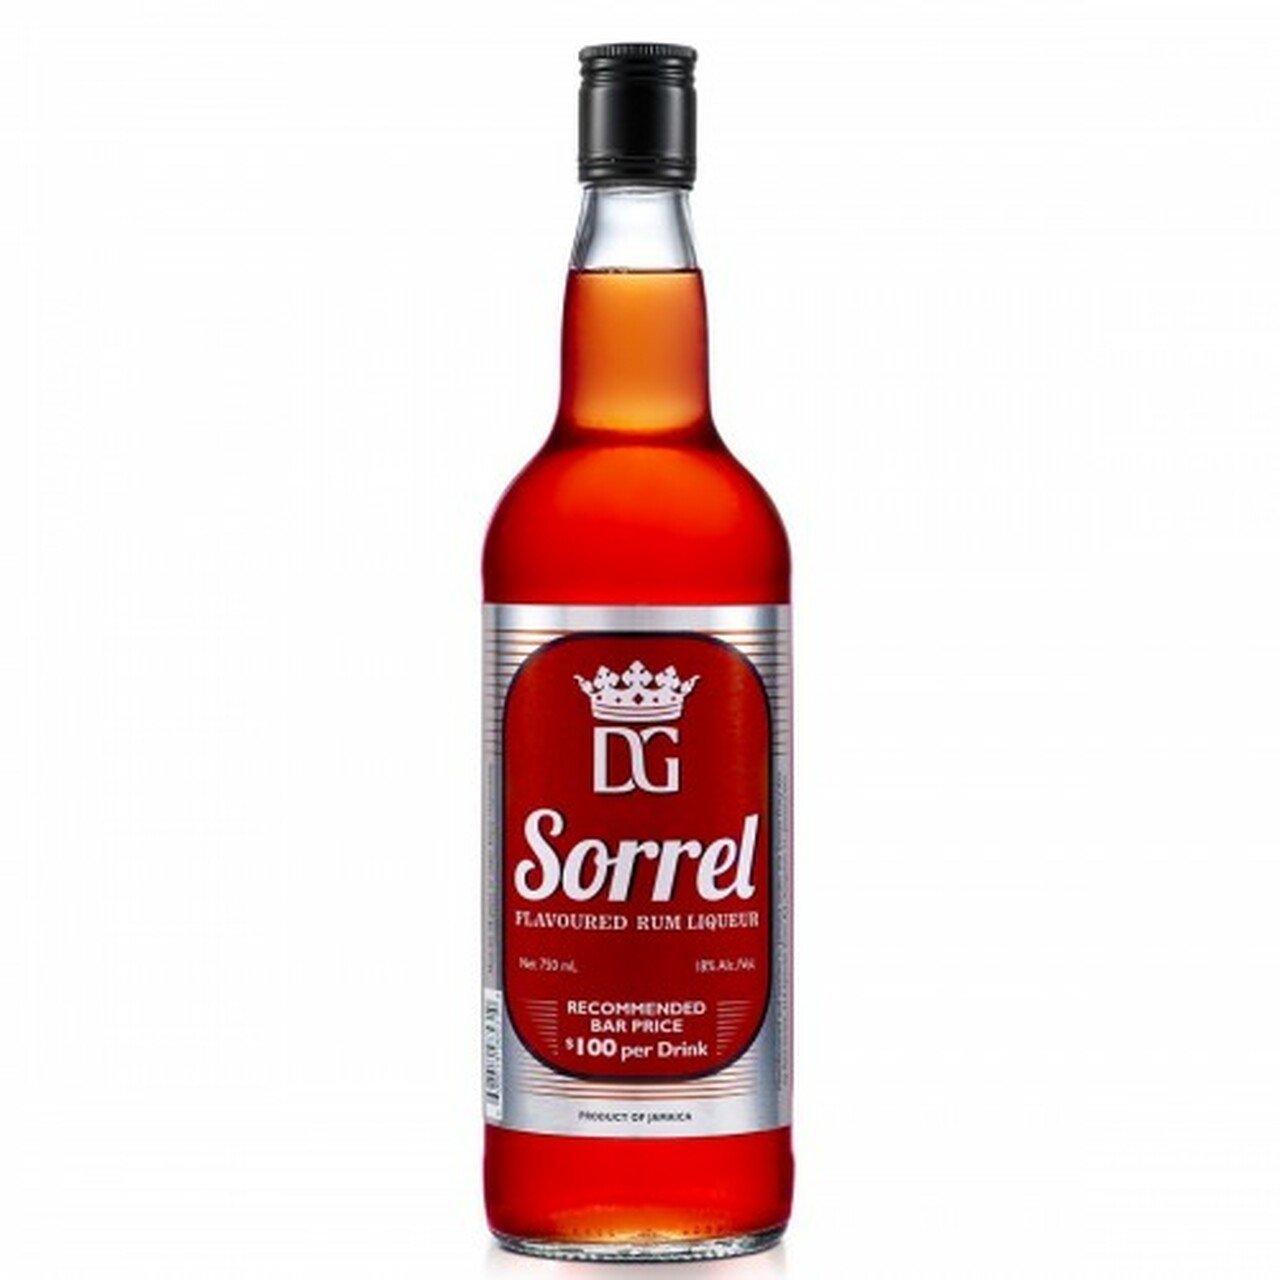 D&G Sorrel Rum Liqueur